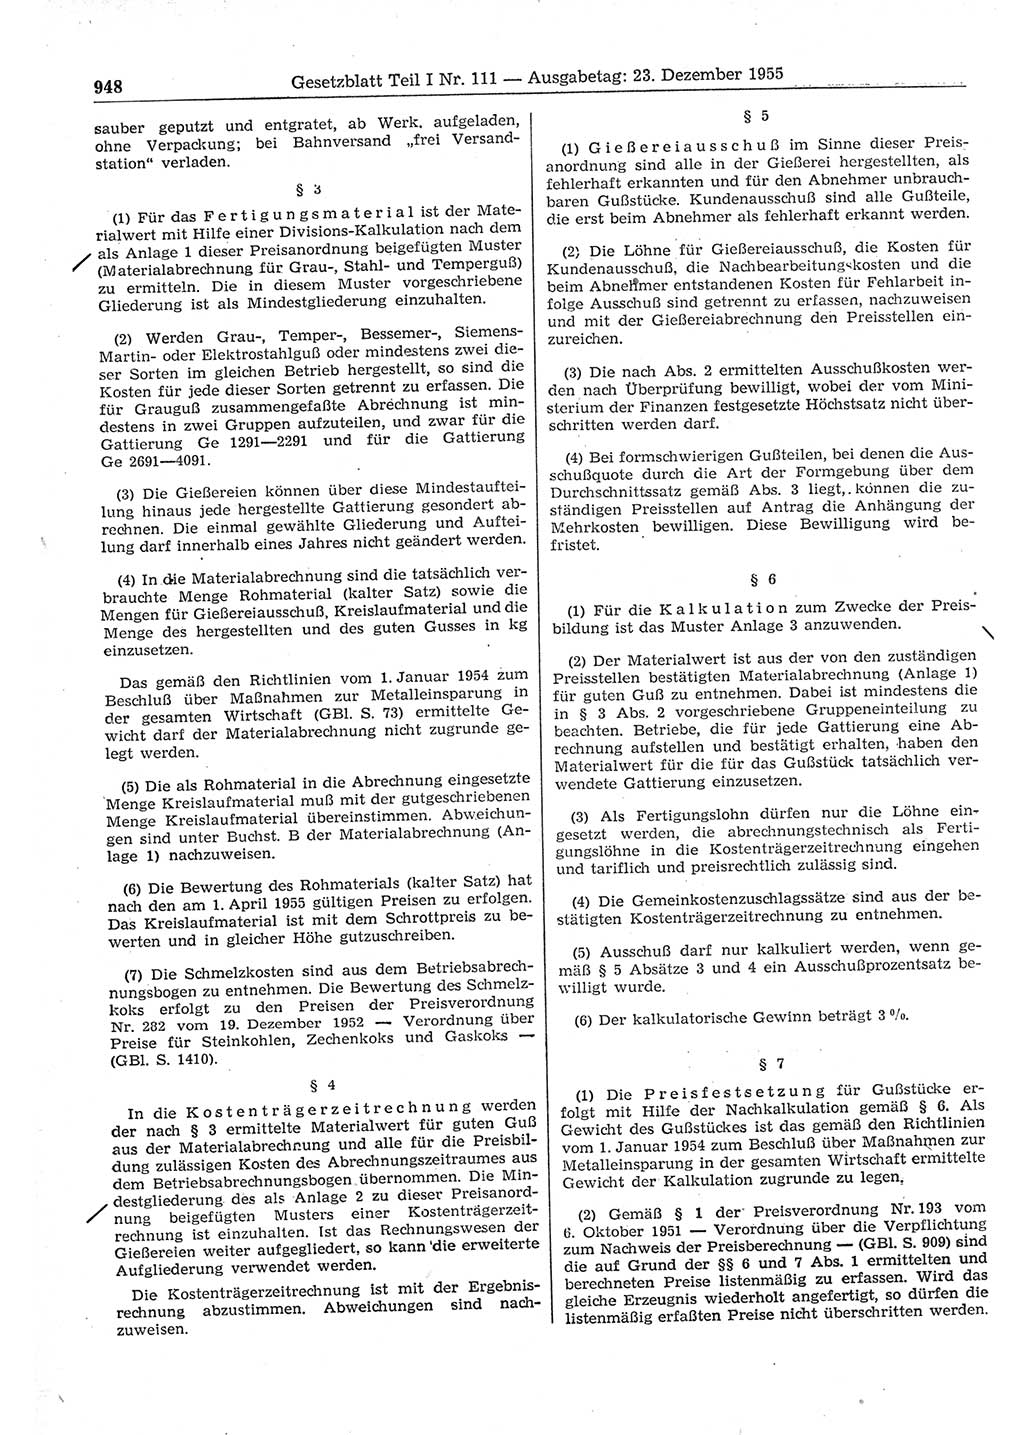 Gesetzblatt (GBl.) der Deutschen Demokratischen Republik (DDR) Teil Ⅰ 1955, Seite 948 (GBl. DDR Ⅰ 1955, S. 948)